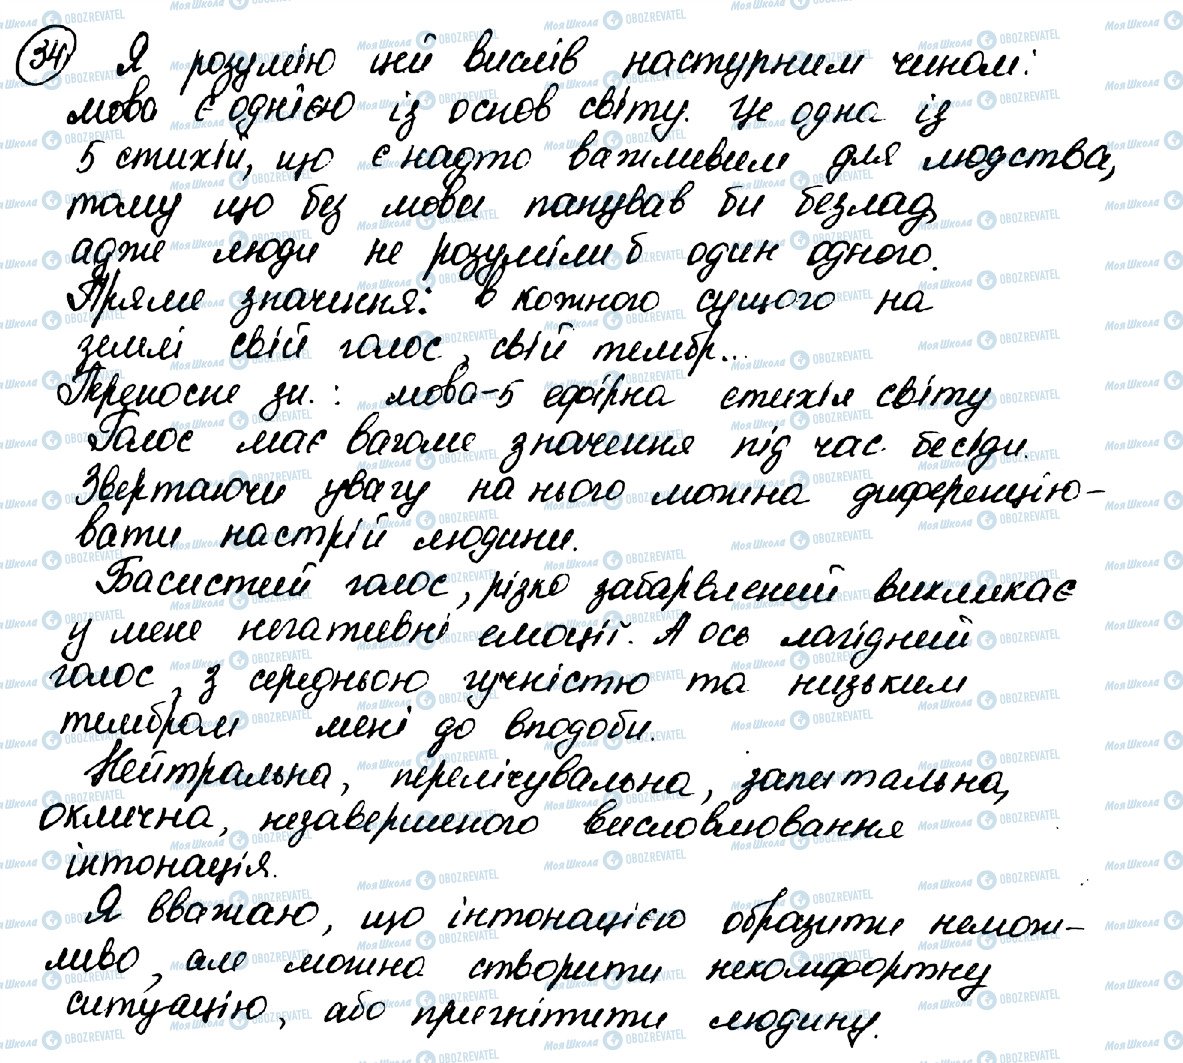 ГДЗ Українська мова 10 клас сторінка 34